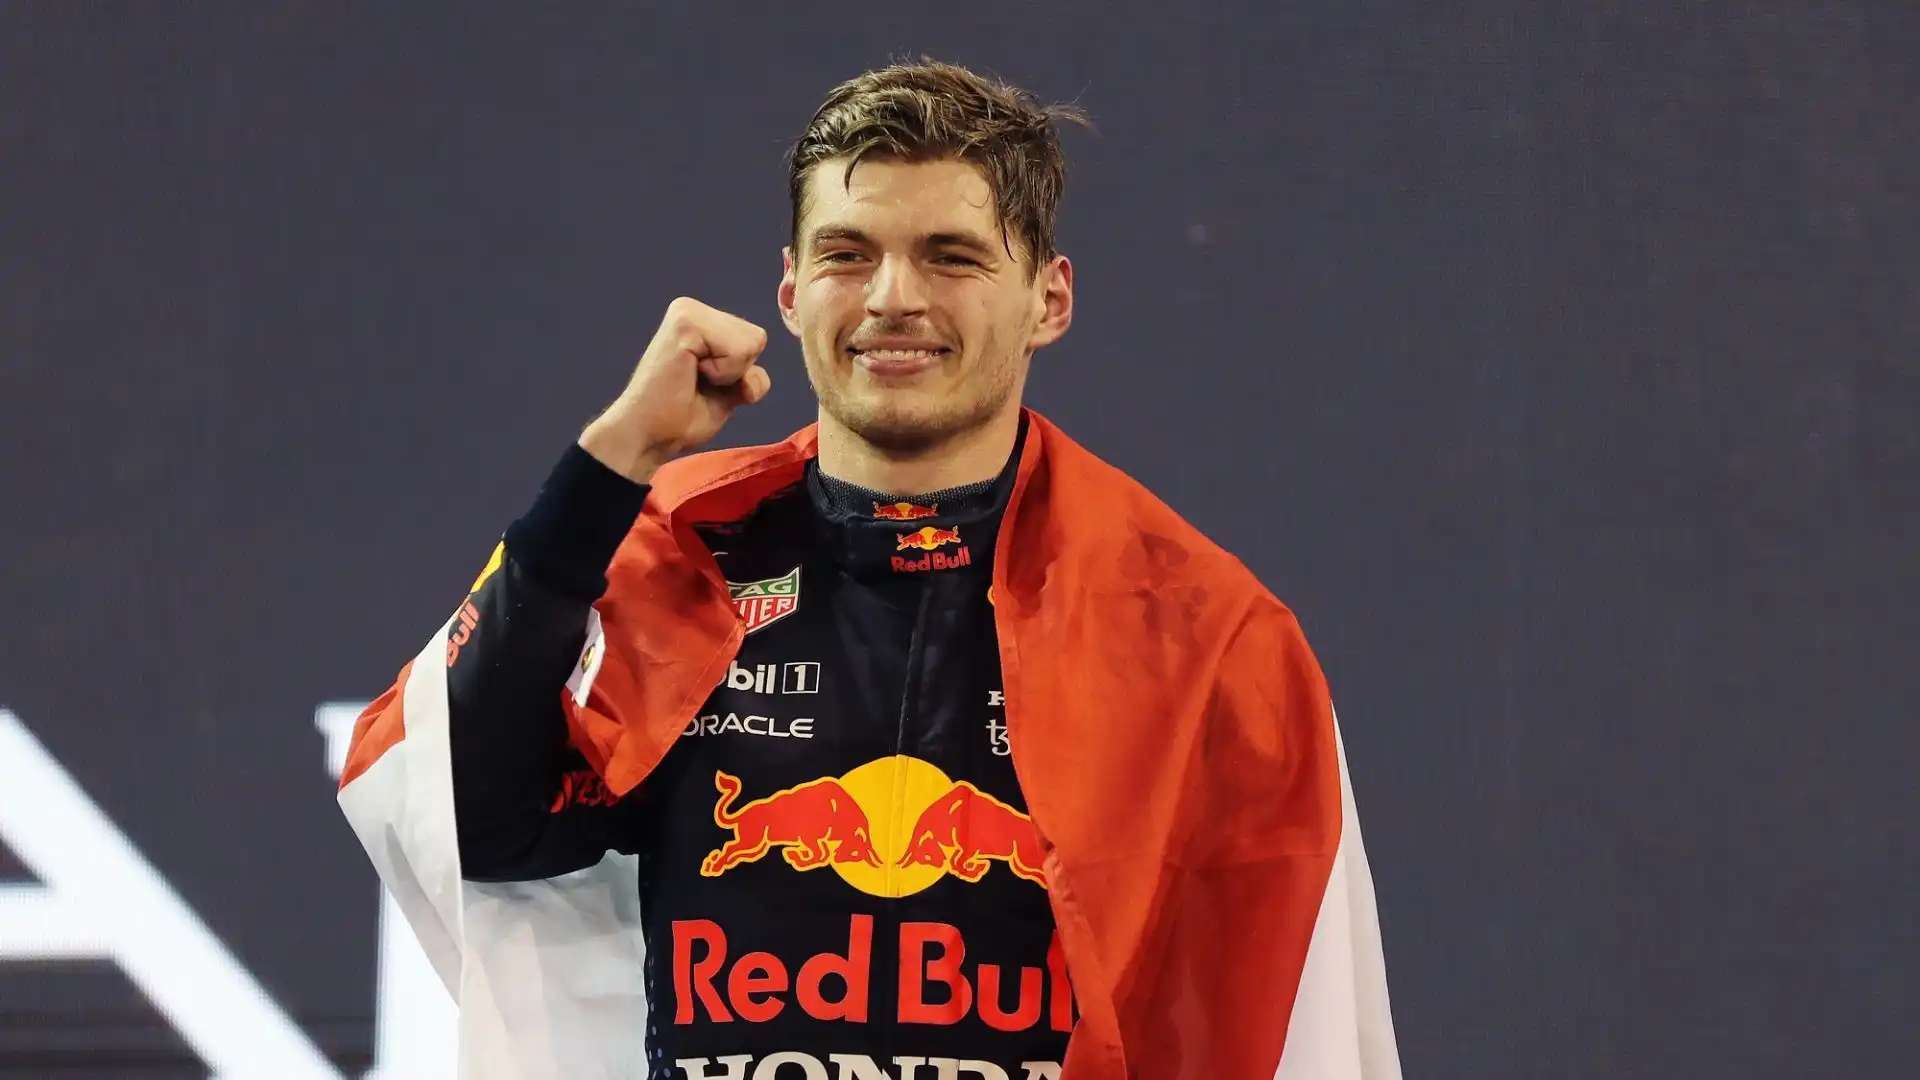 Secondo l'ex pilota di F1 David Coulthard, il futuro del pilota olandese è legato alla Red Bull, e non ci saranno cambi di squadra nei prossimi anni